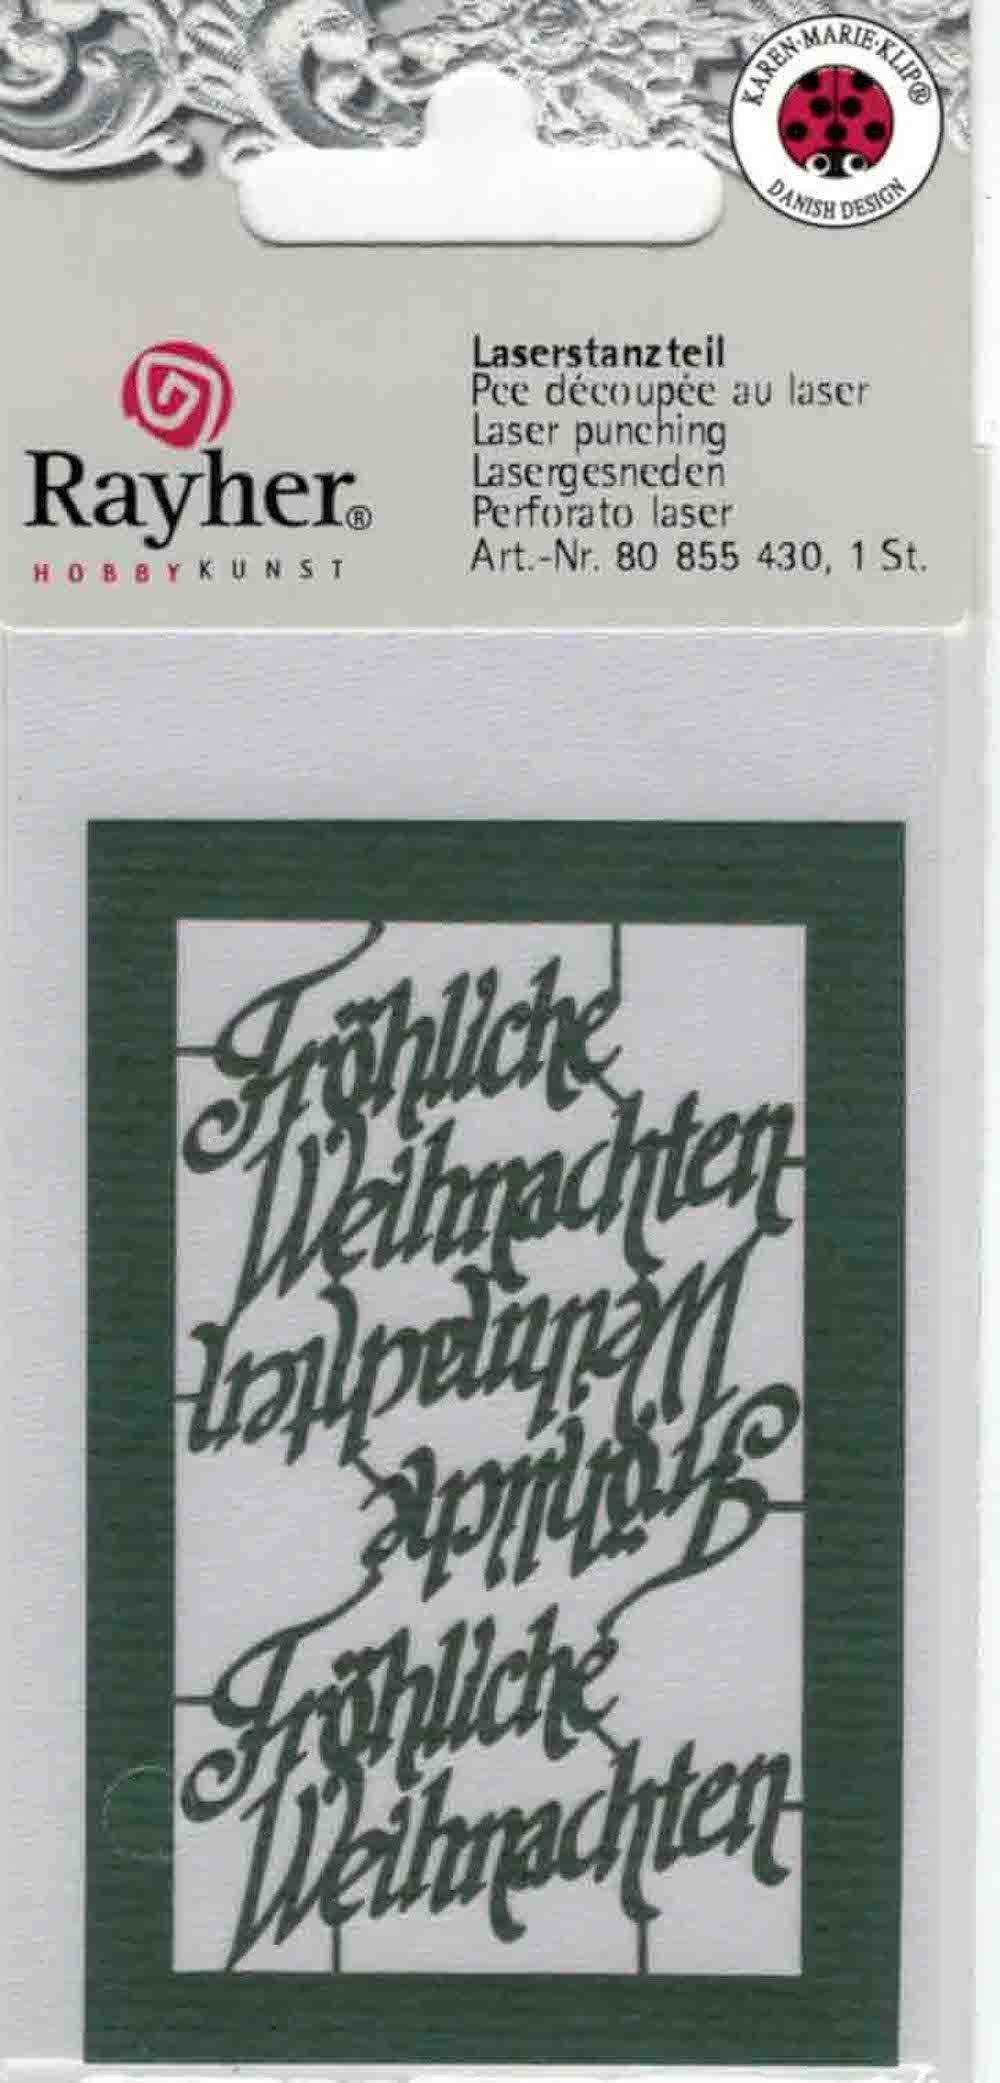 'Fröhliche 7,5x5cm Grün Rayher Laserstanzteil Weihnachten' Zeichenpapier